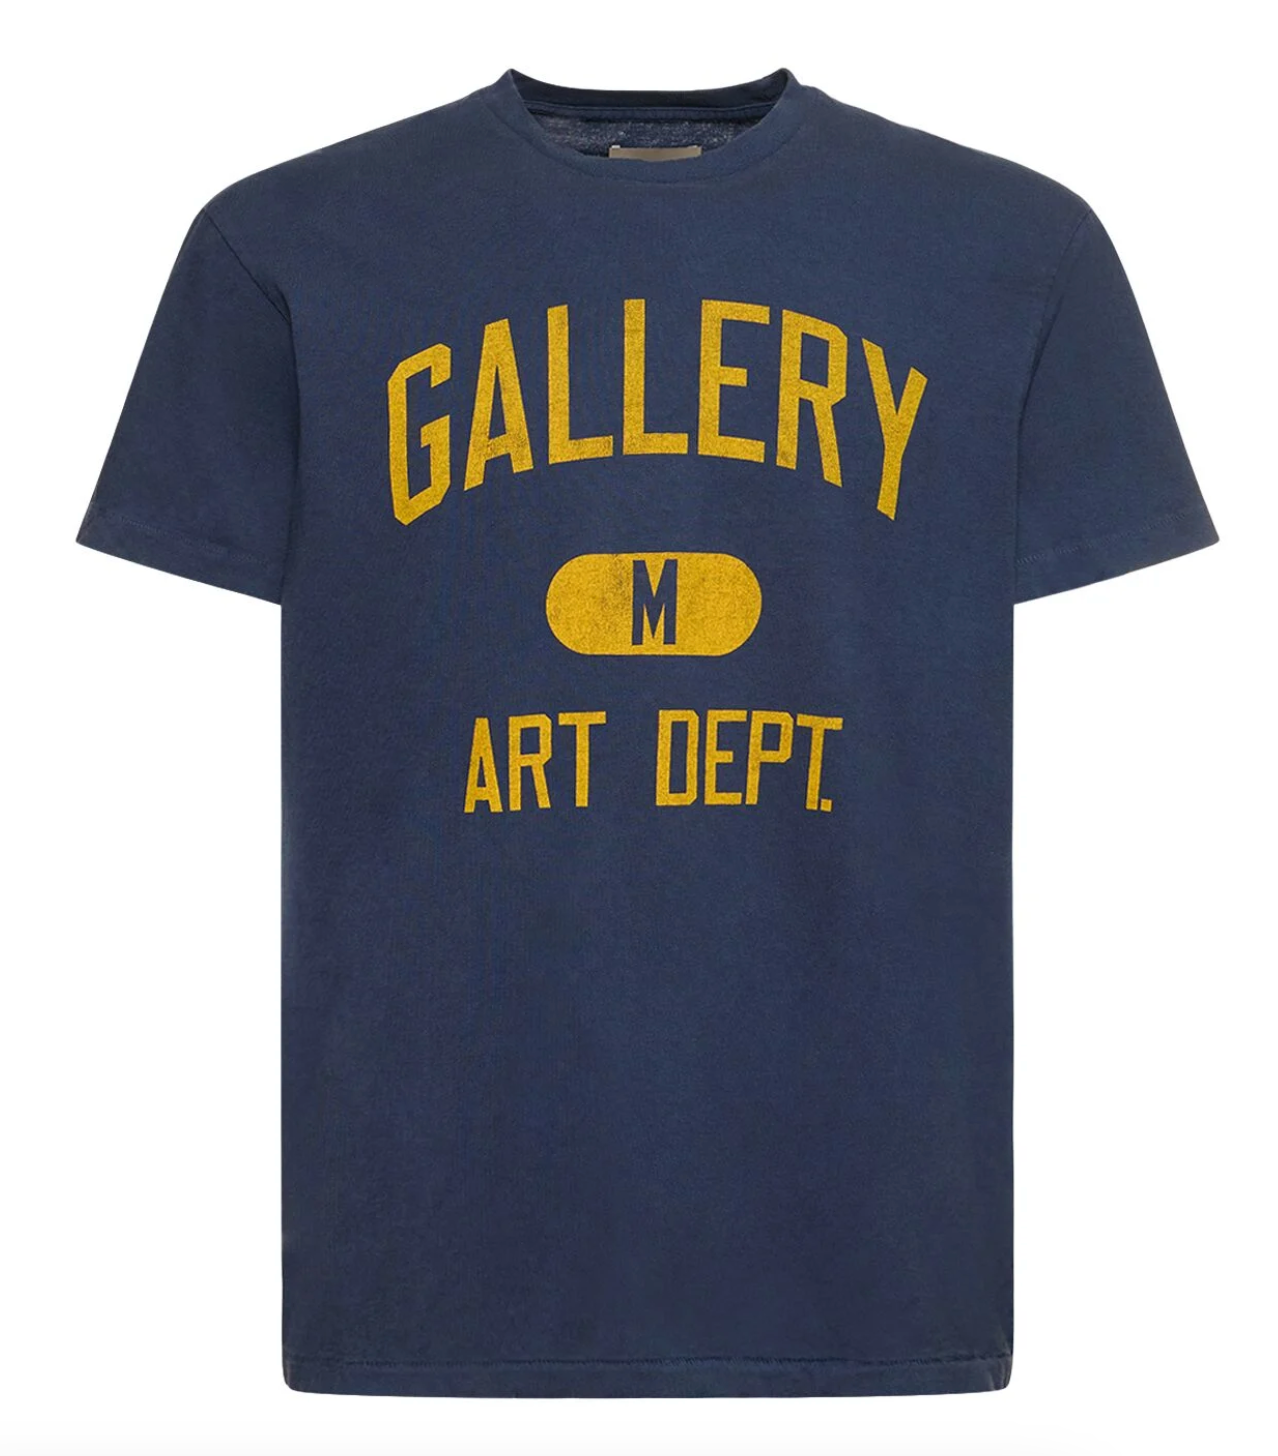 Gallery Dept. Art Dept. T-Shirt przod Lodz Polska